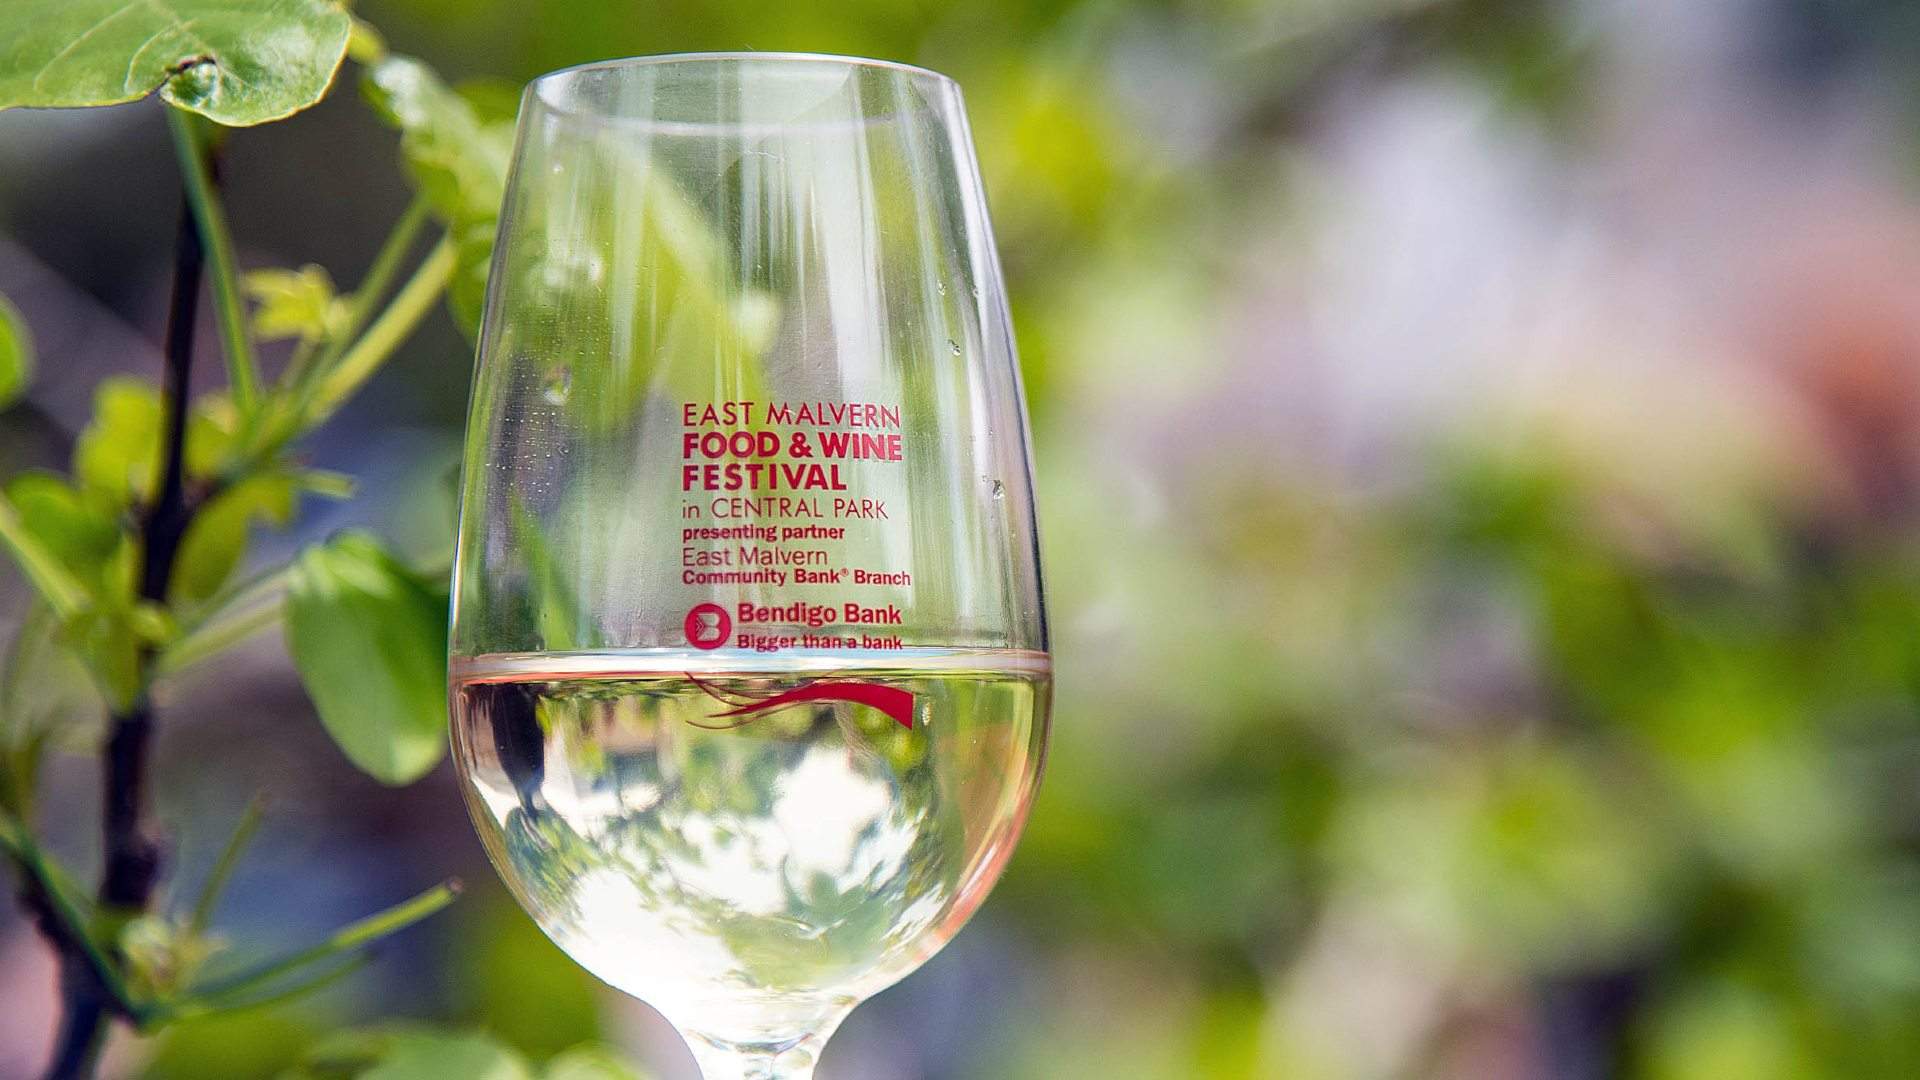 The East Malvern Food & Wine Festival